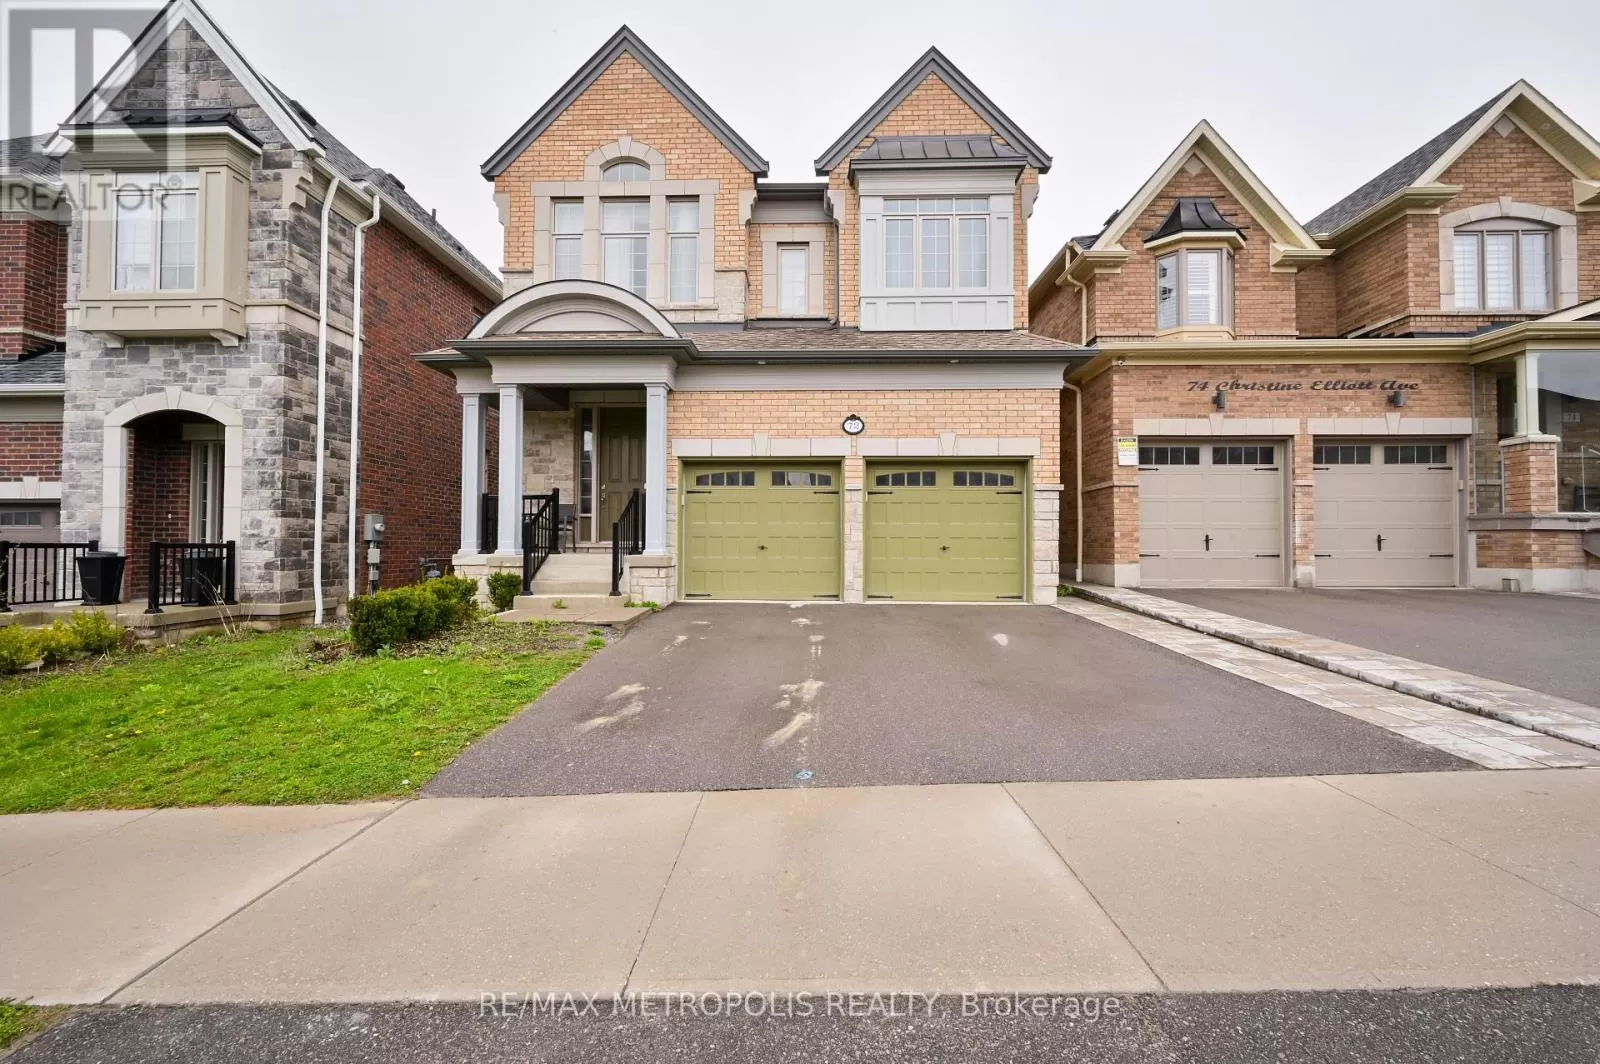 House for rent: #bsmt -72 Christine Elliott Ave, Whitby, Ontario L1P 0E1